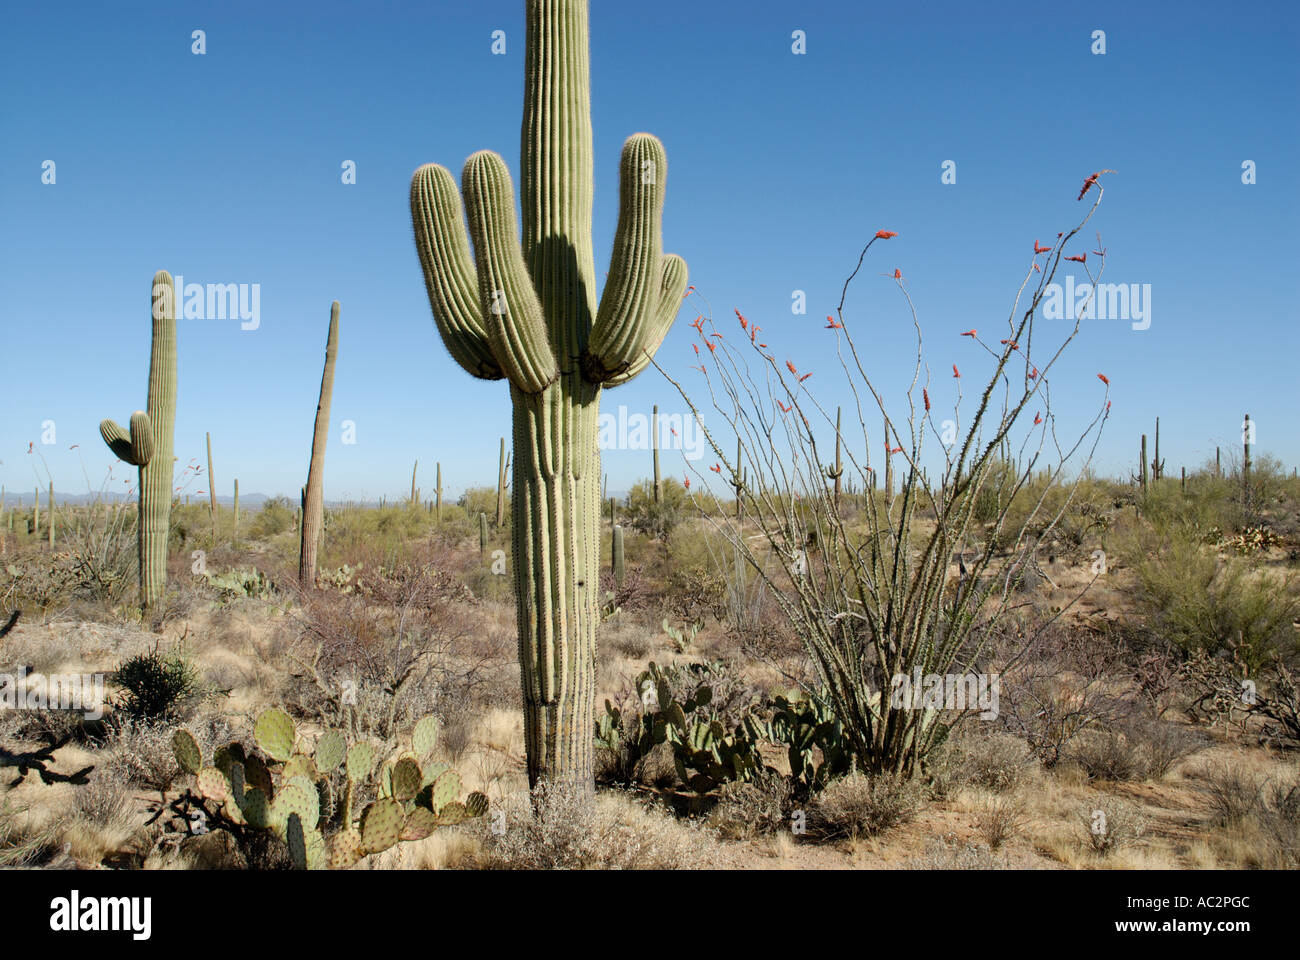 La scena del deserto con matura Saguaro, Carnegiea gigantea, Ocatillo, Cholla e Ficodindia cactus, Deserto Sonoran, Arizona Foto Stock